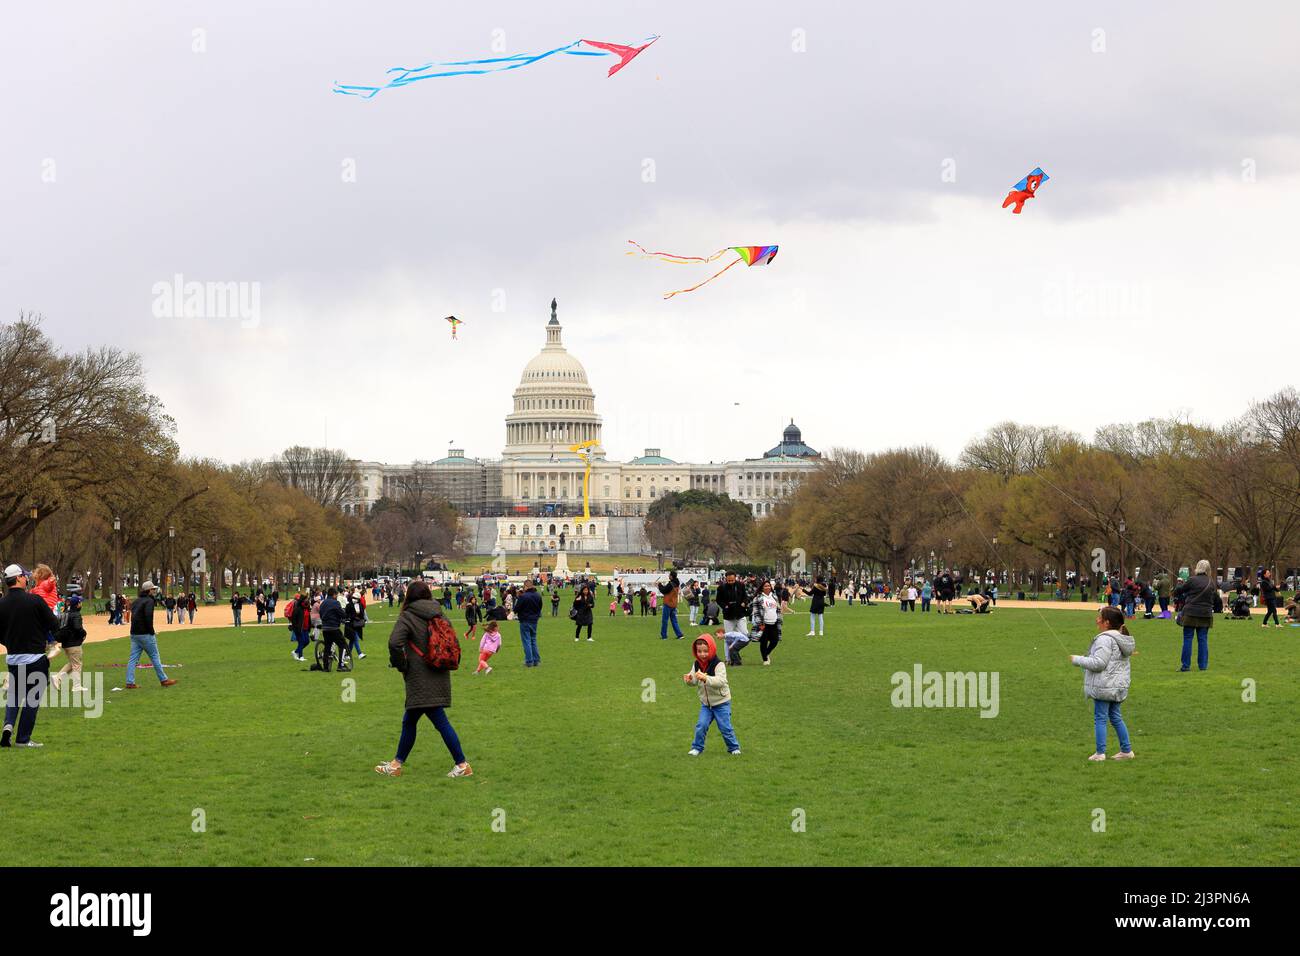 Niños, personas volando cometas en el National Mall con el Capitolio de los Estados Unidos al fondo durante el festival Cherry Blossom, Washington DC, 26 de marzo de 2022 Foto de stock